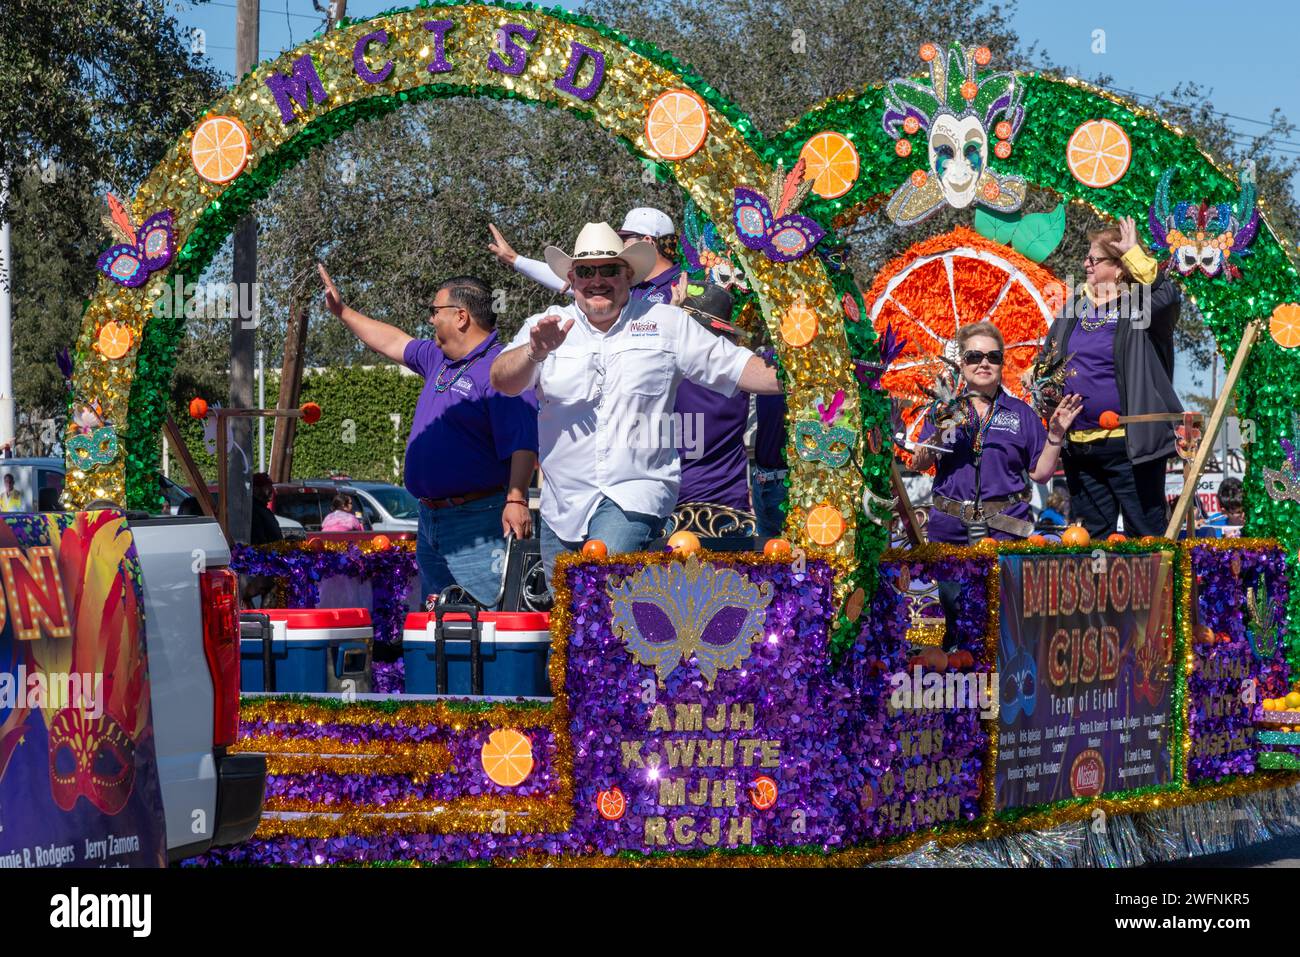 Les gens ondulent du défilé violet et vert pour Mission School District dans la 92e édition annuelle Texas Citrus Fiesta Parade of oranges, Mission, Texas, USA. Banque D'Images